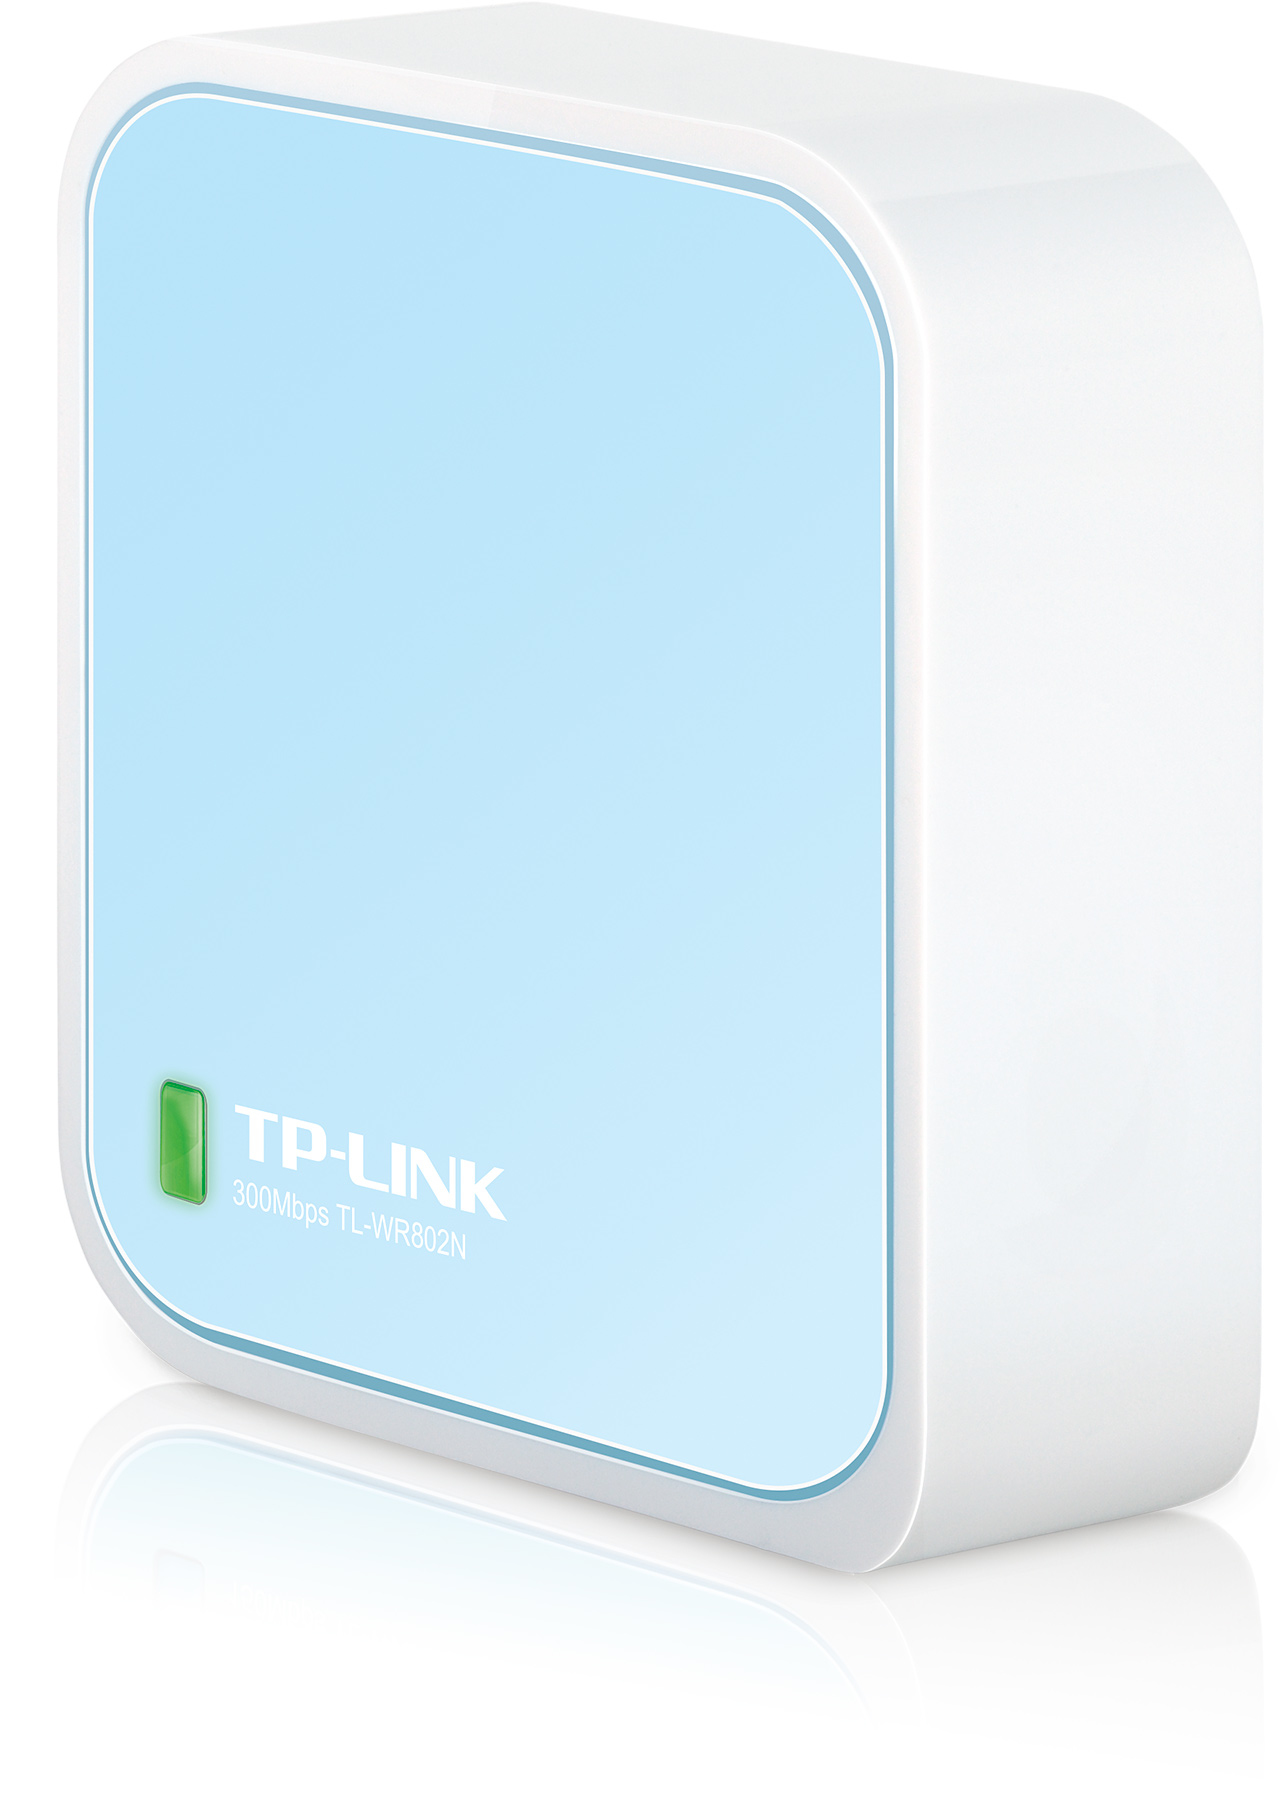 TP-Link TL-WR802N trådlös router Snabb Ethernet Singel-band (2,4 GHz) Blå, Vit